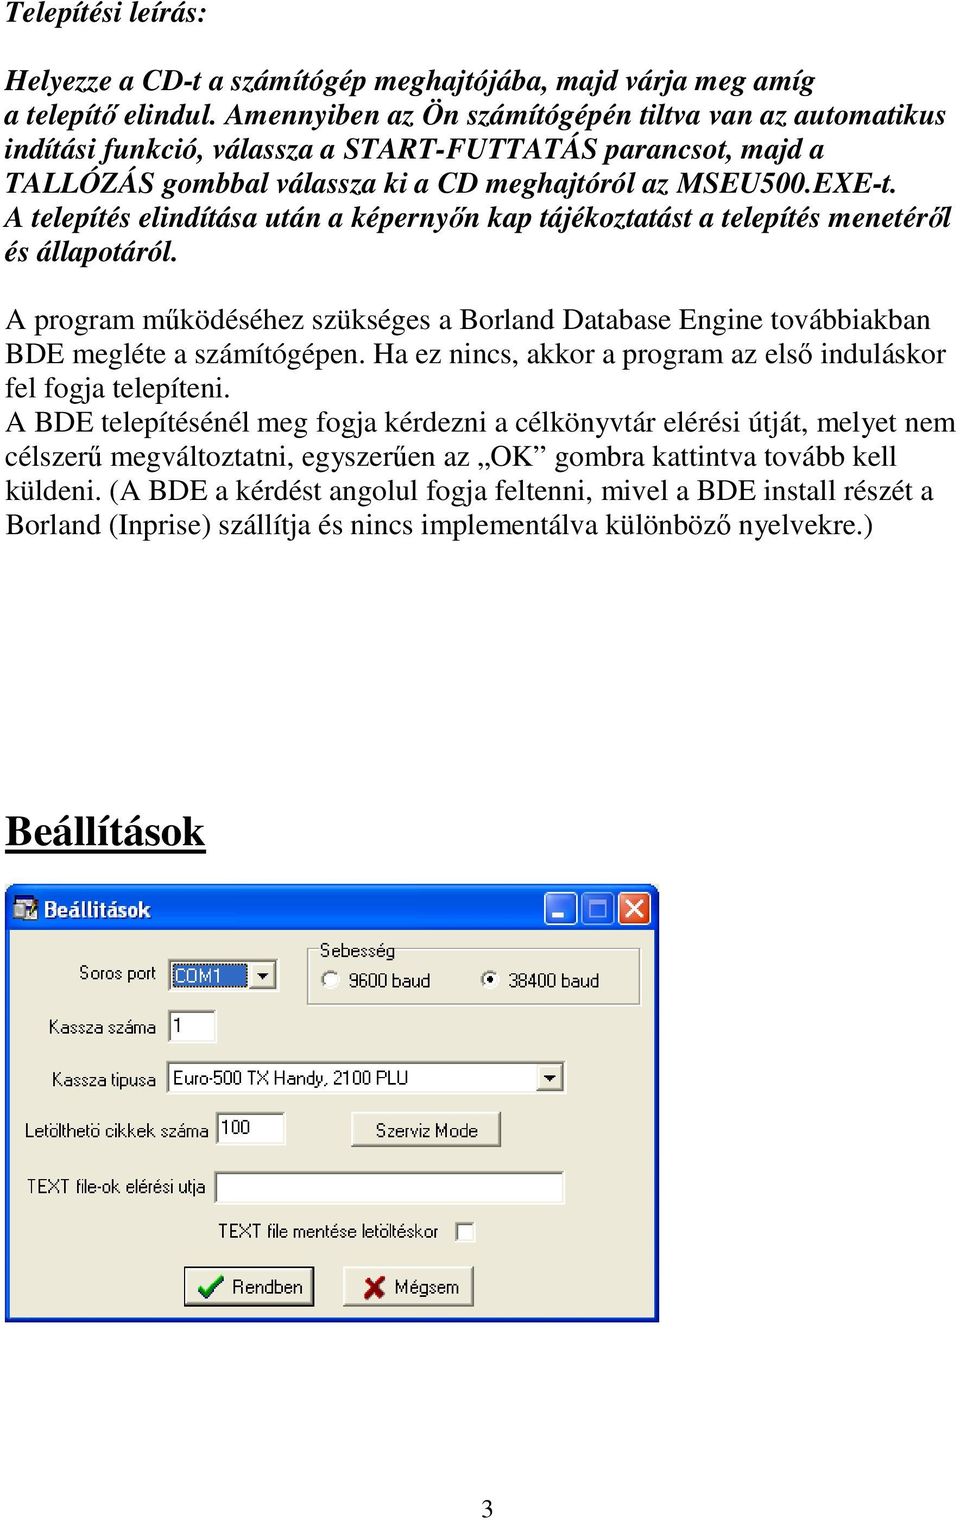 A telepítés elindítása után a képernyőn kap tájékoztatást a telepítés menetéről és állapotáról. A program működéséhez szükséges a Borland Database Engine továbbiakban BDE megléte a számítógépen.